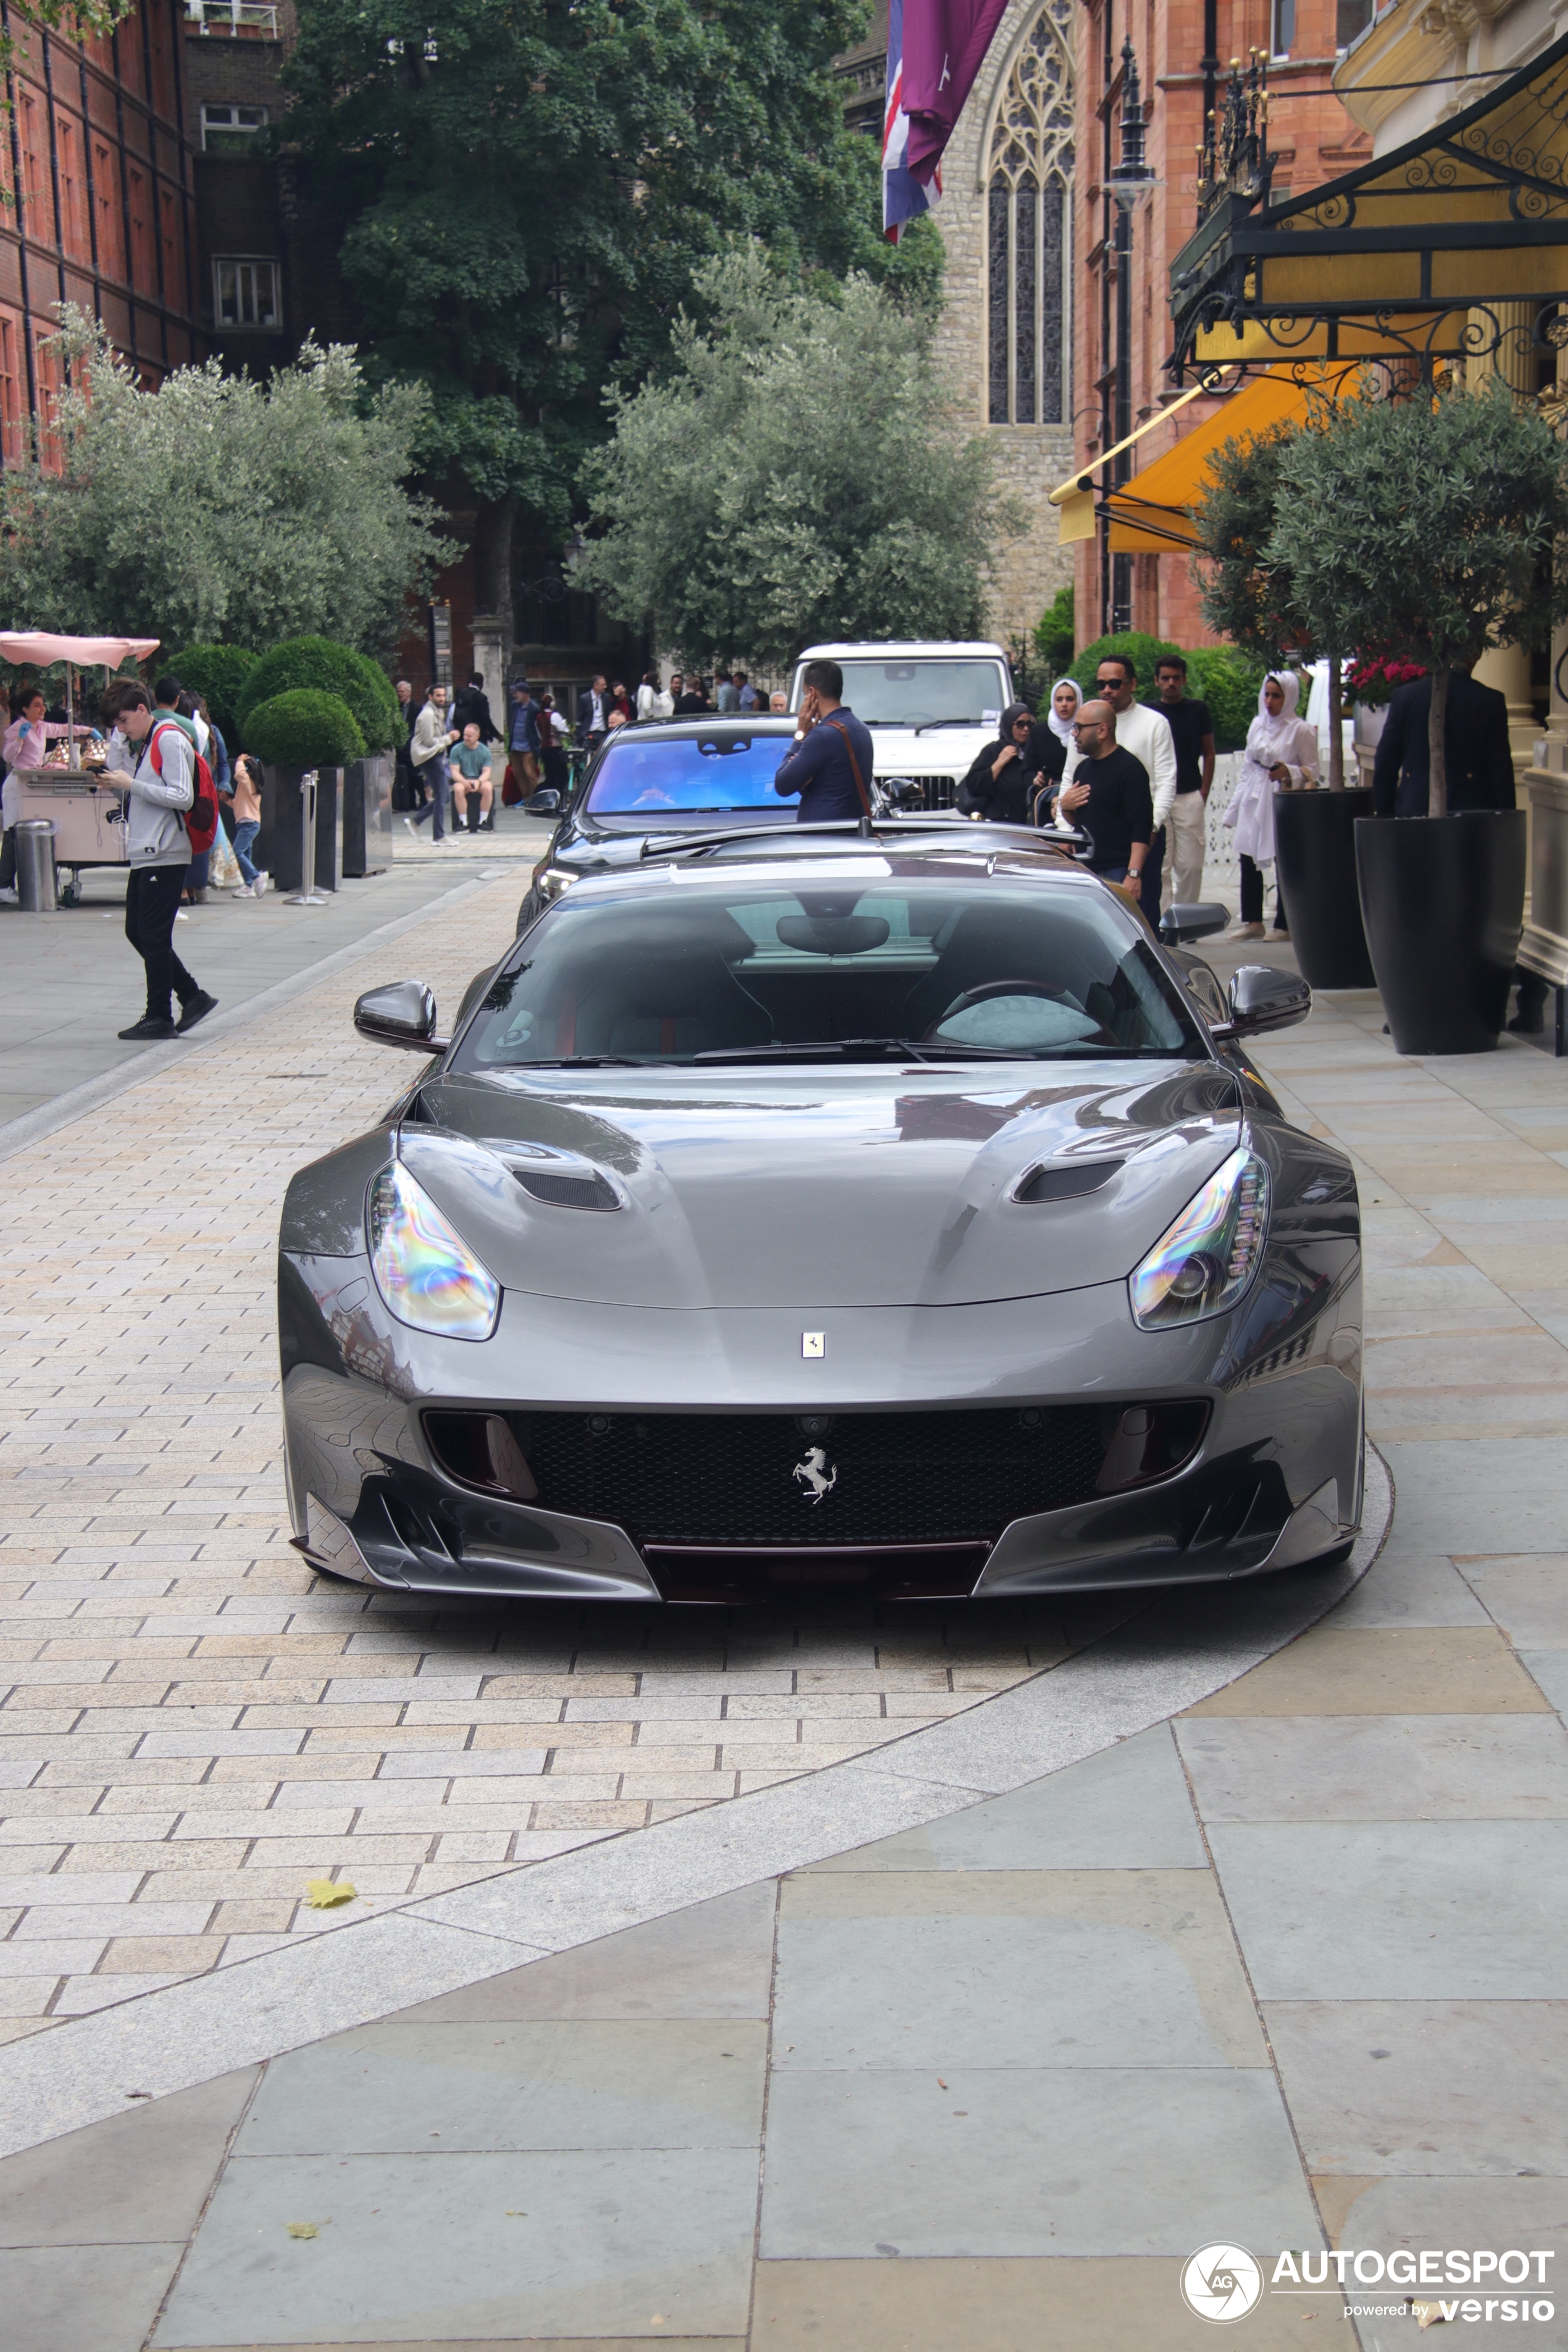 Prelep i podjednako poseban Ferrari F12tdf pojavljuje se u Londonu